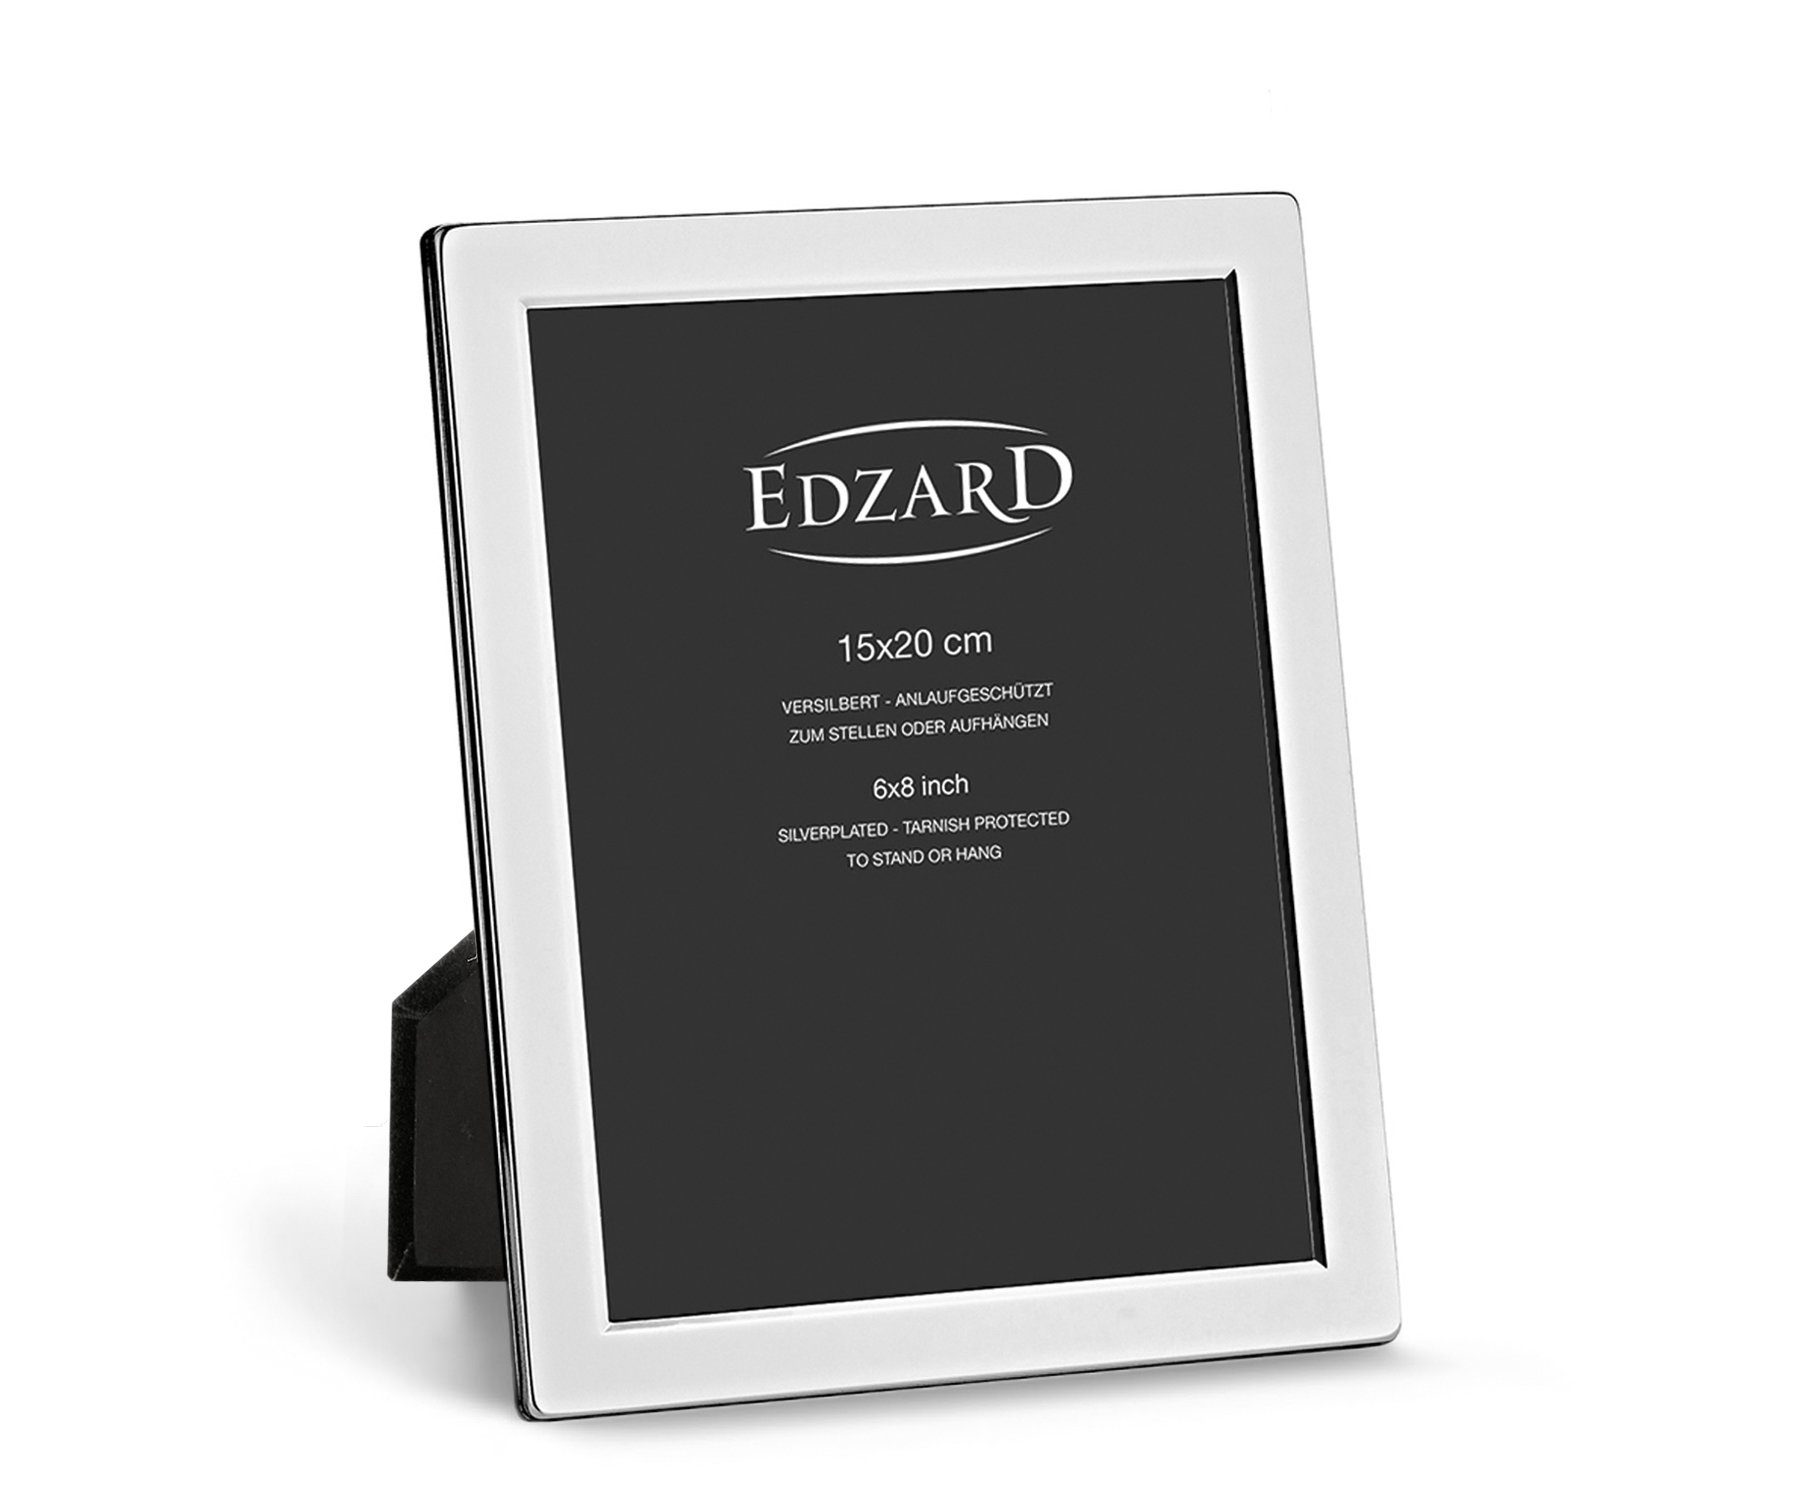 EDZARD Bilderrahmen Salerno, versilbert und anlaufgeschützt, für 15x20 cm Foto | Einzelrahmen